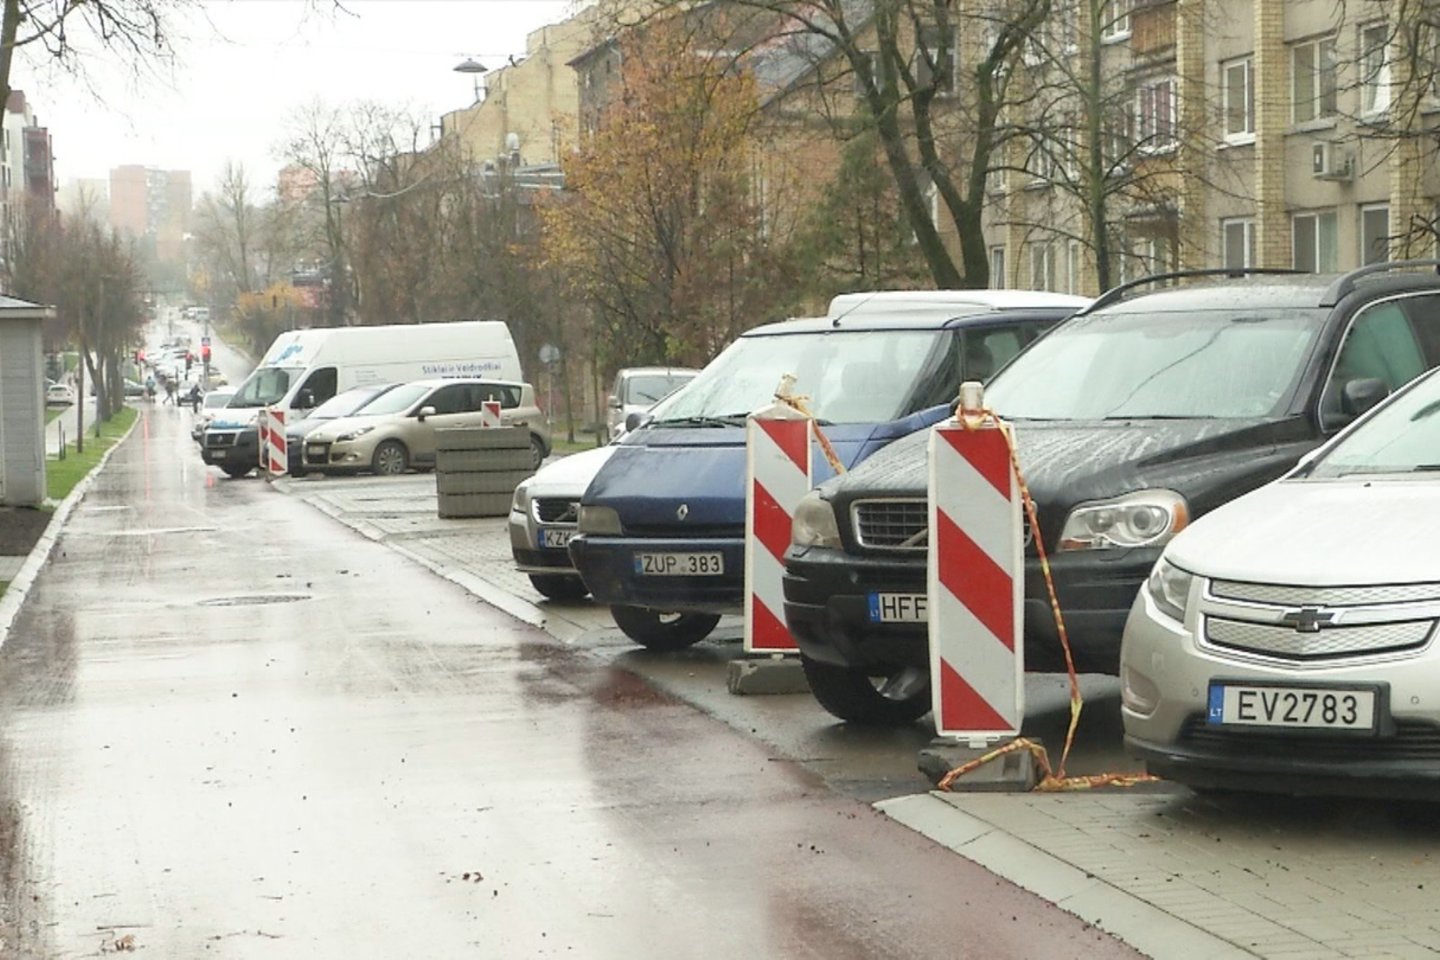 Vilniaus miesto gatvių infrastruktūros standartas, pavadintas Vilniaus gatvių atnaujinimo projektu, pasak jį pristačiusios savivaldybės, žymi sostinės gatvių desovietizacijos pradžią.<br>Stop kadras